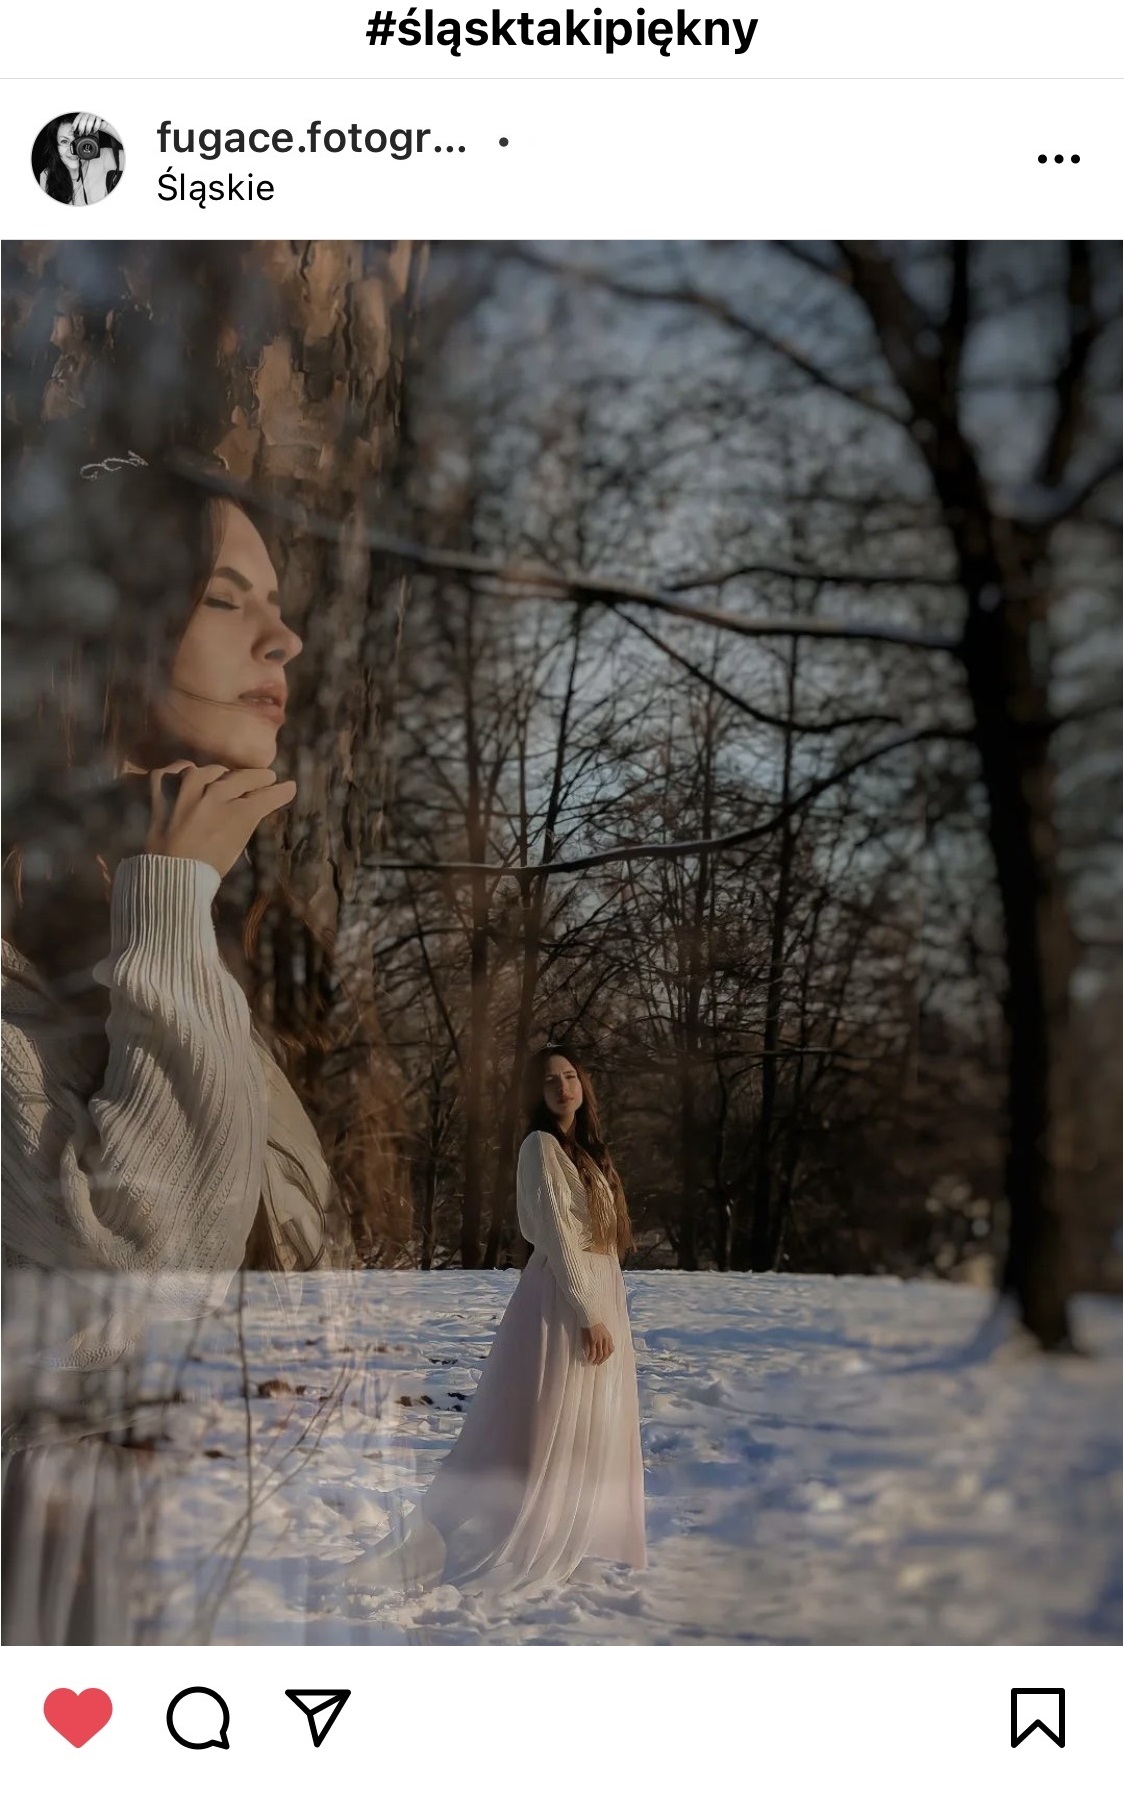 Kobieta w białej kurtce i pięknych długich włosach stojąca w śniegu w lesie.